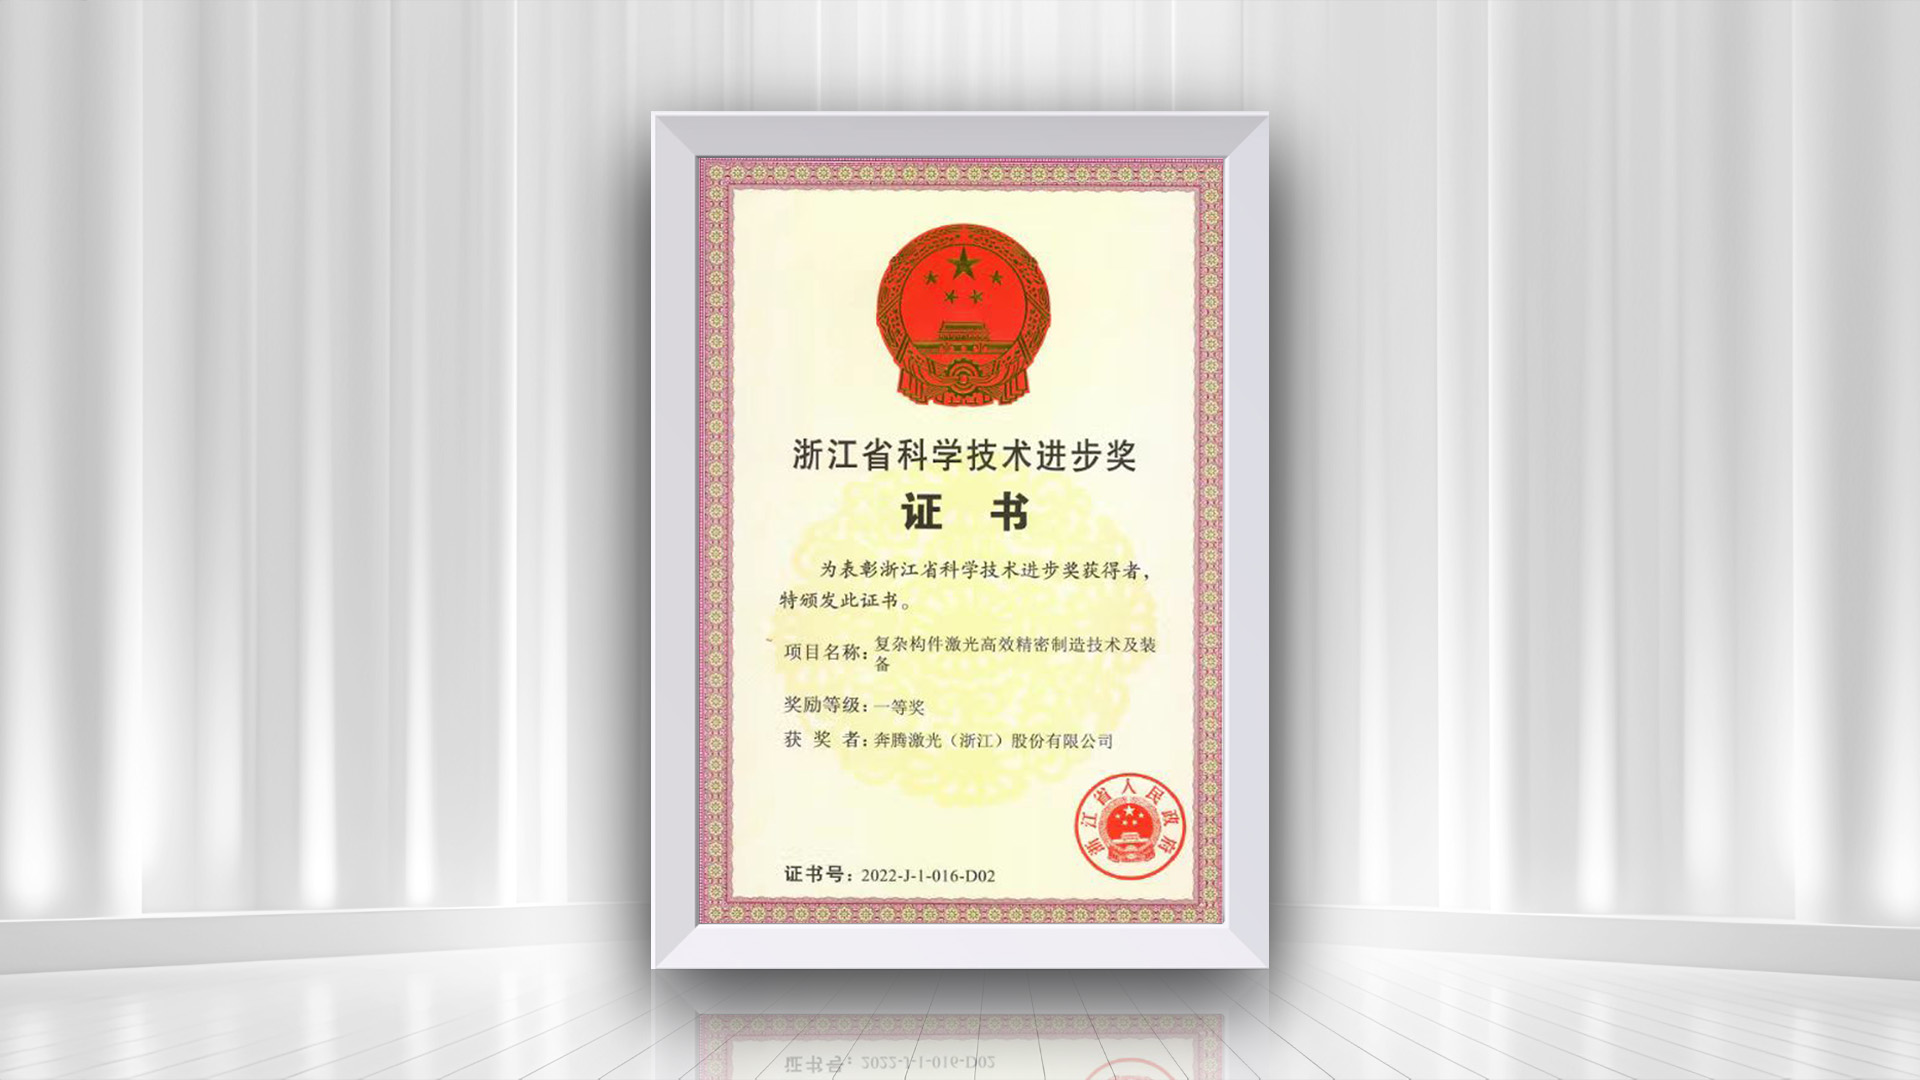 Herzlichen Glückwunsch an Penta Laser zum Gewinn des ersten Preises beim Zhejiang Provincial Science and Technology Progress Award für das Projekt „Complex Component Laser Efficient Precision Manufacturing Technology and Equipment“.